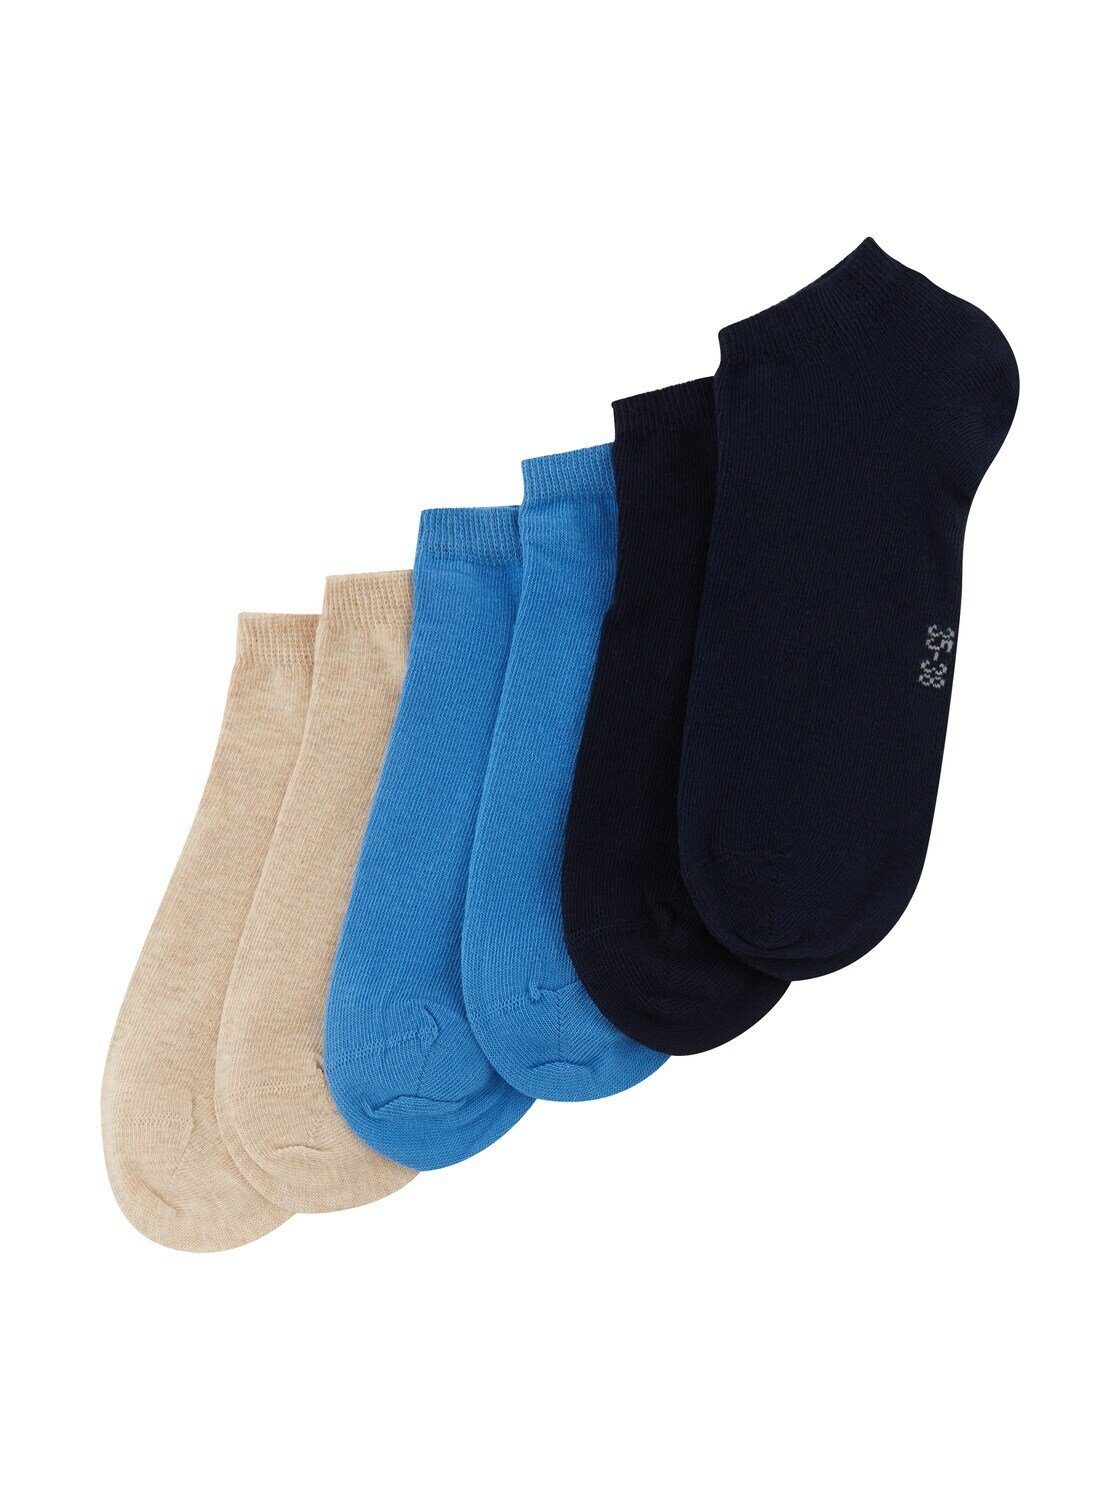 TOM TAILOR Socken Socken im Multipack (im Sechserpack) marine